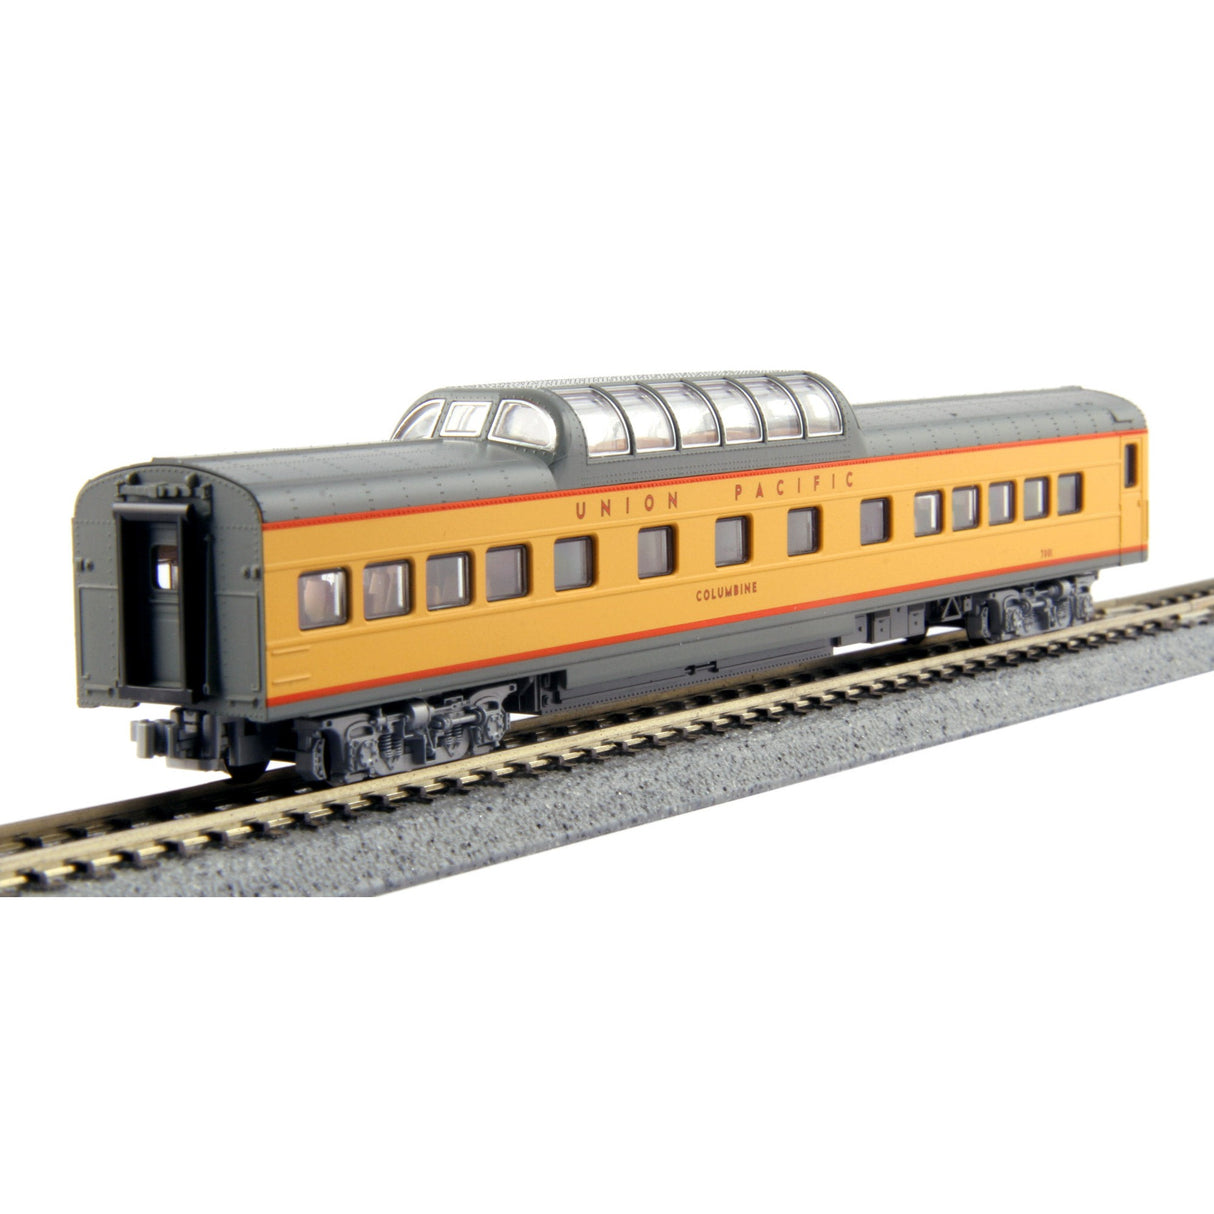 Kato N Scale Union Pacific UP Excursion Train 7-Car Set 106-086